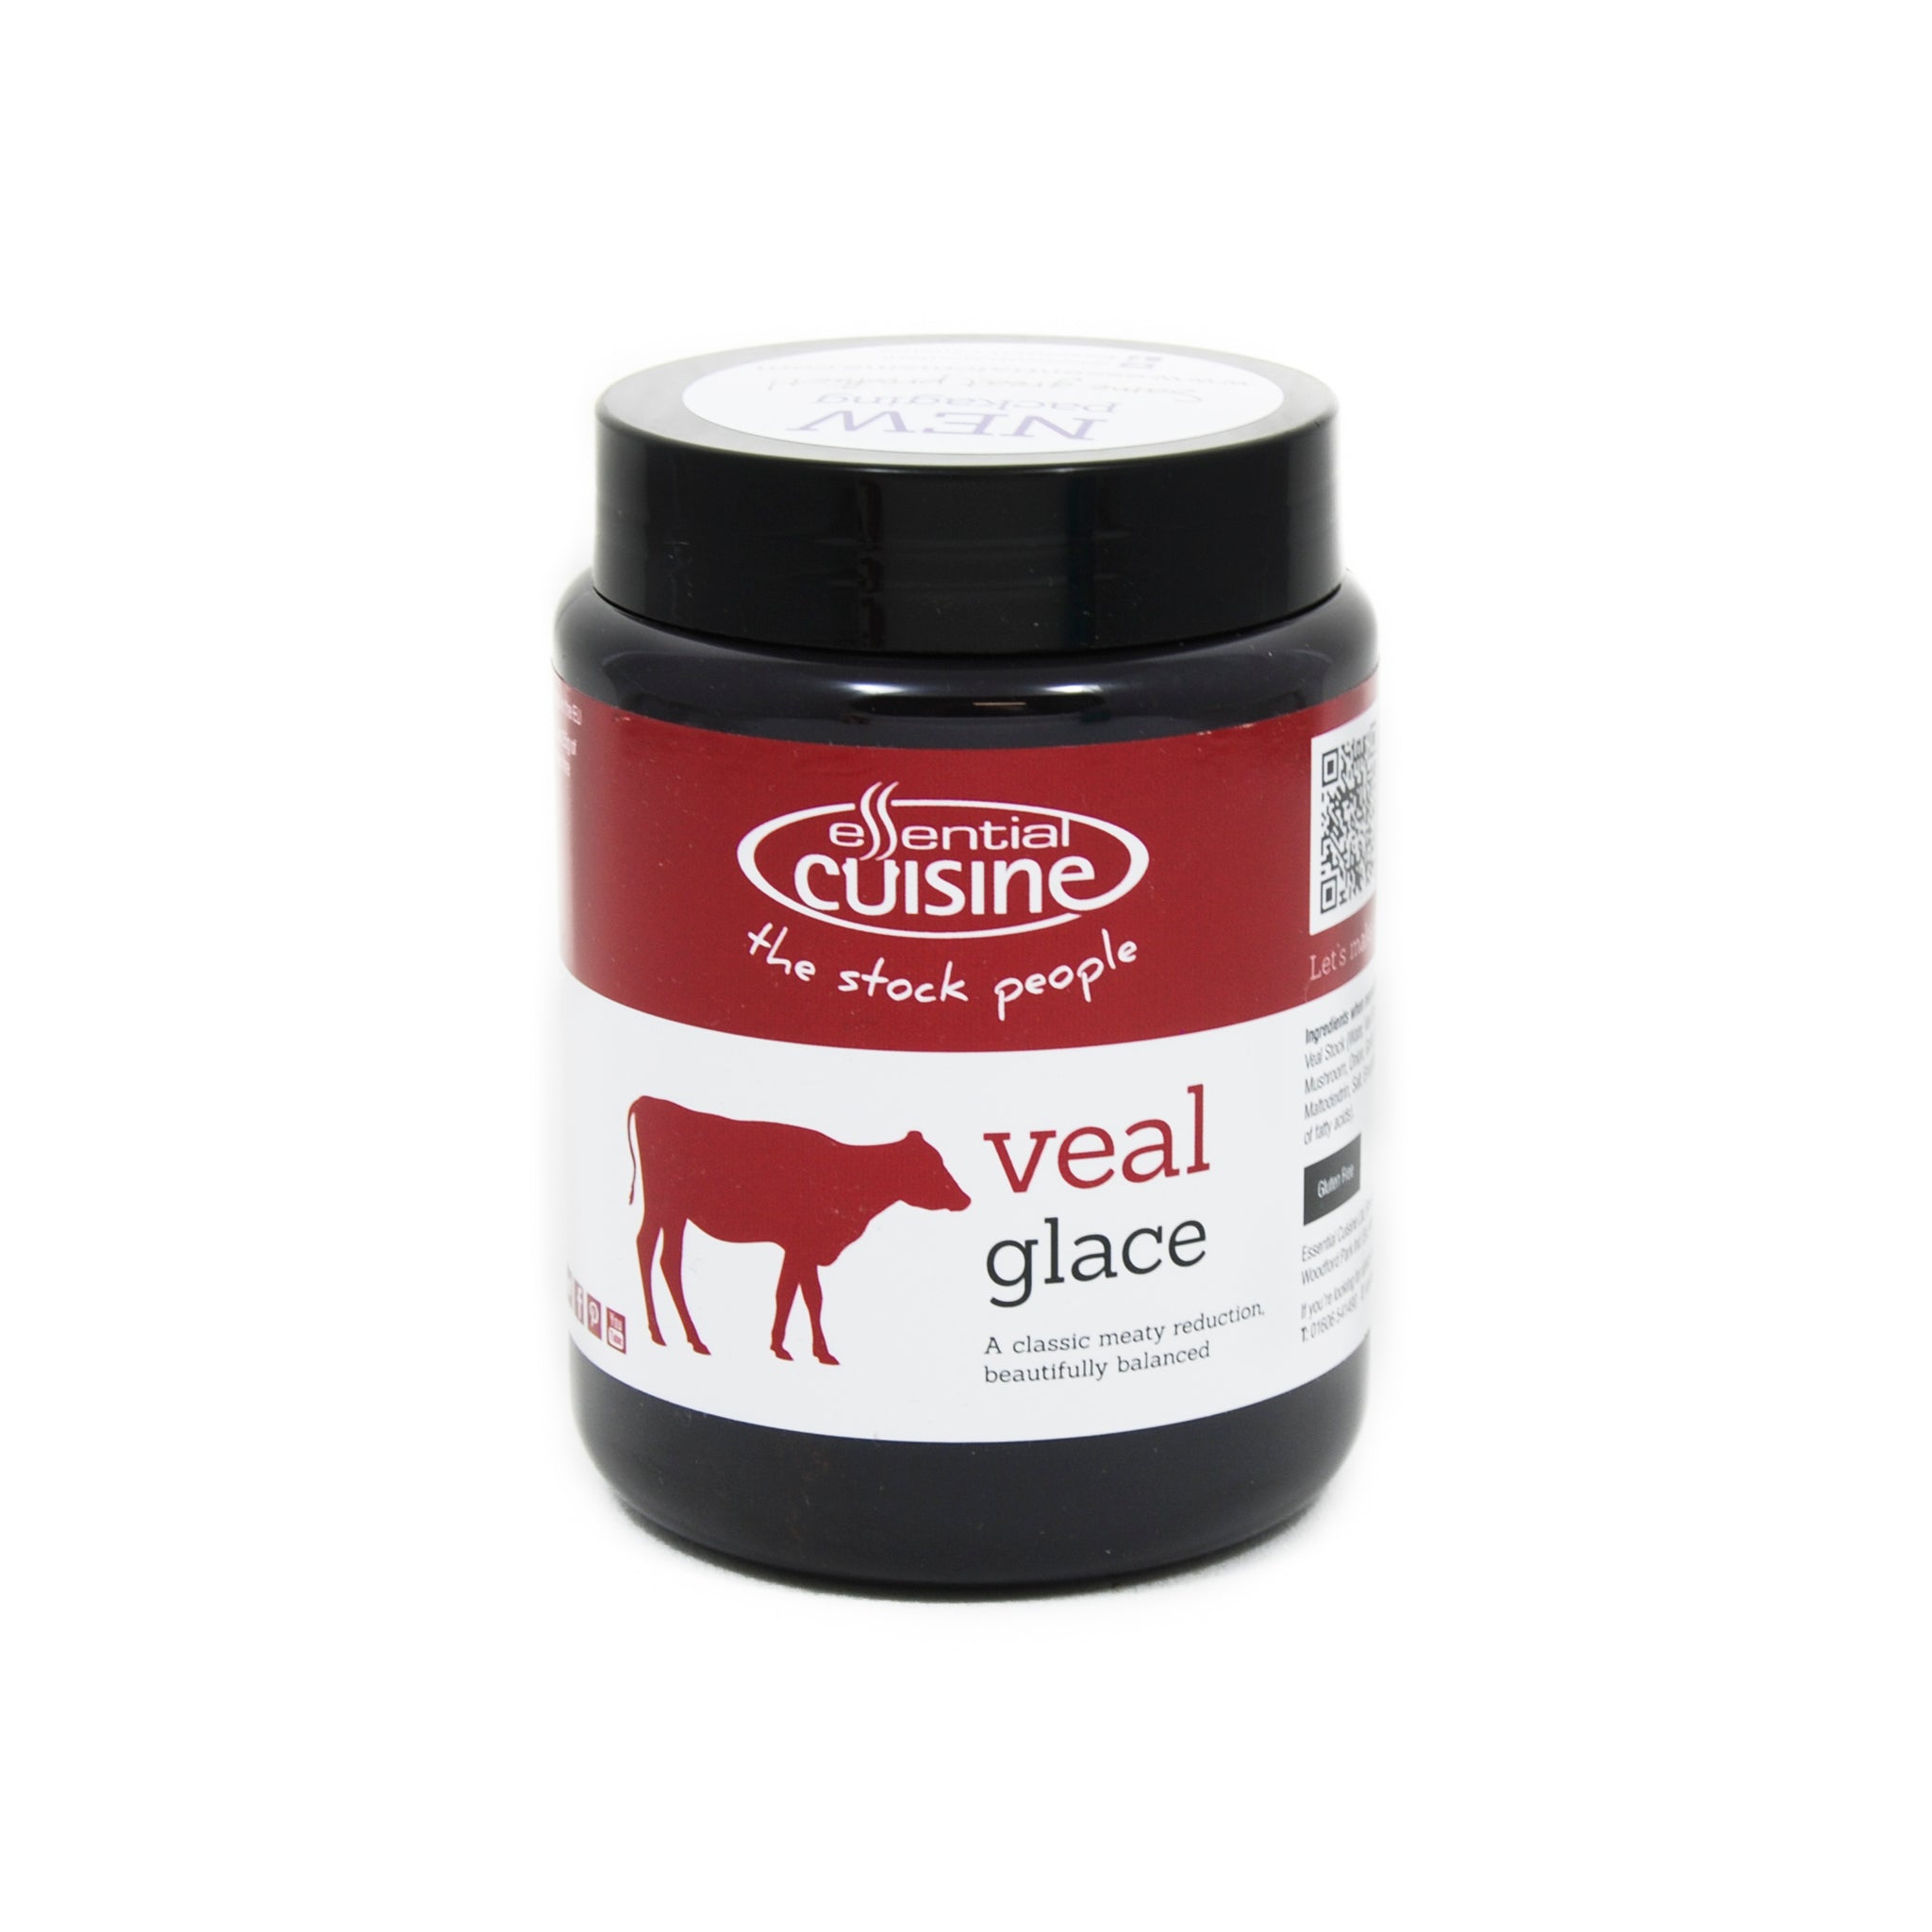 Essential Cuisine Veal Glace 600g Ingredients Seasonings